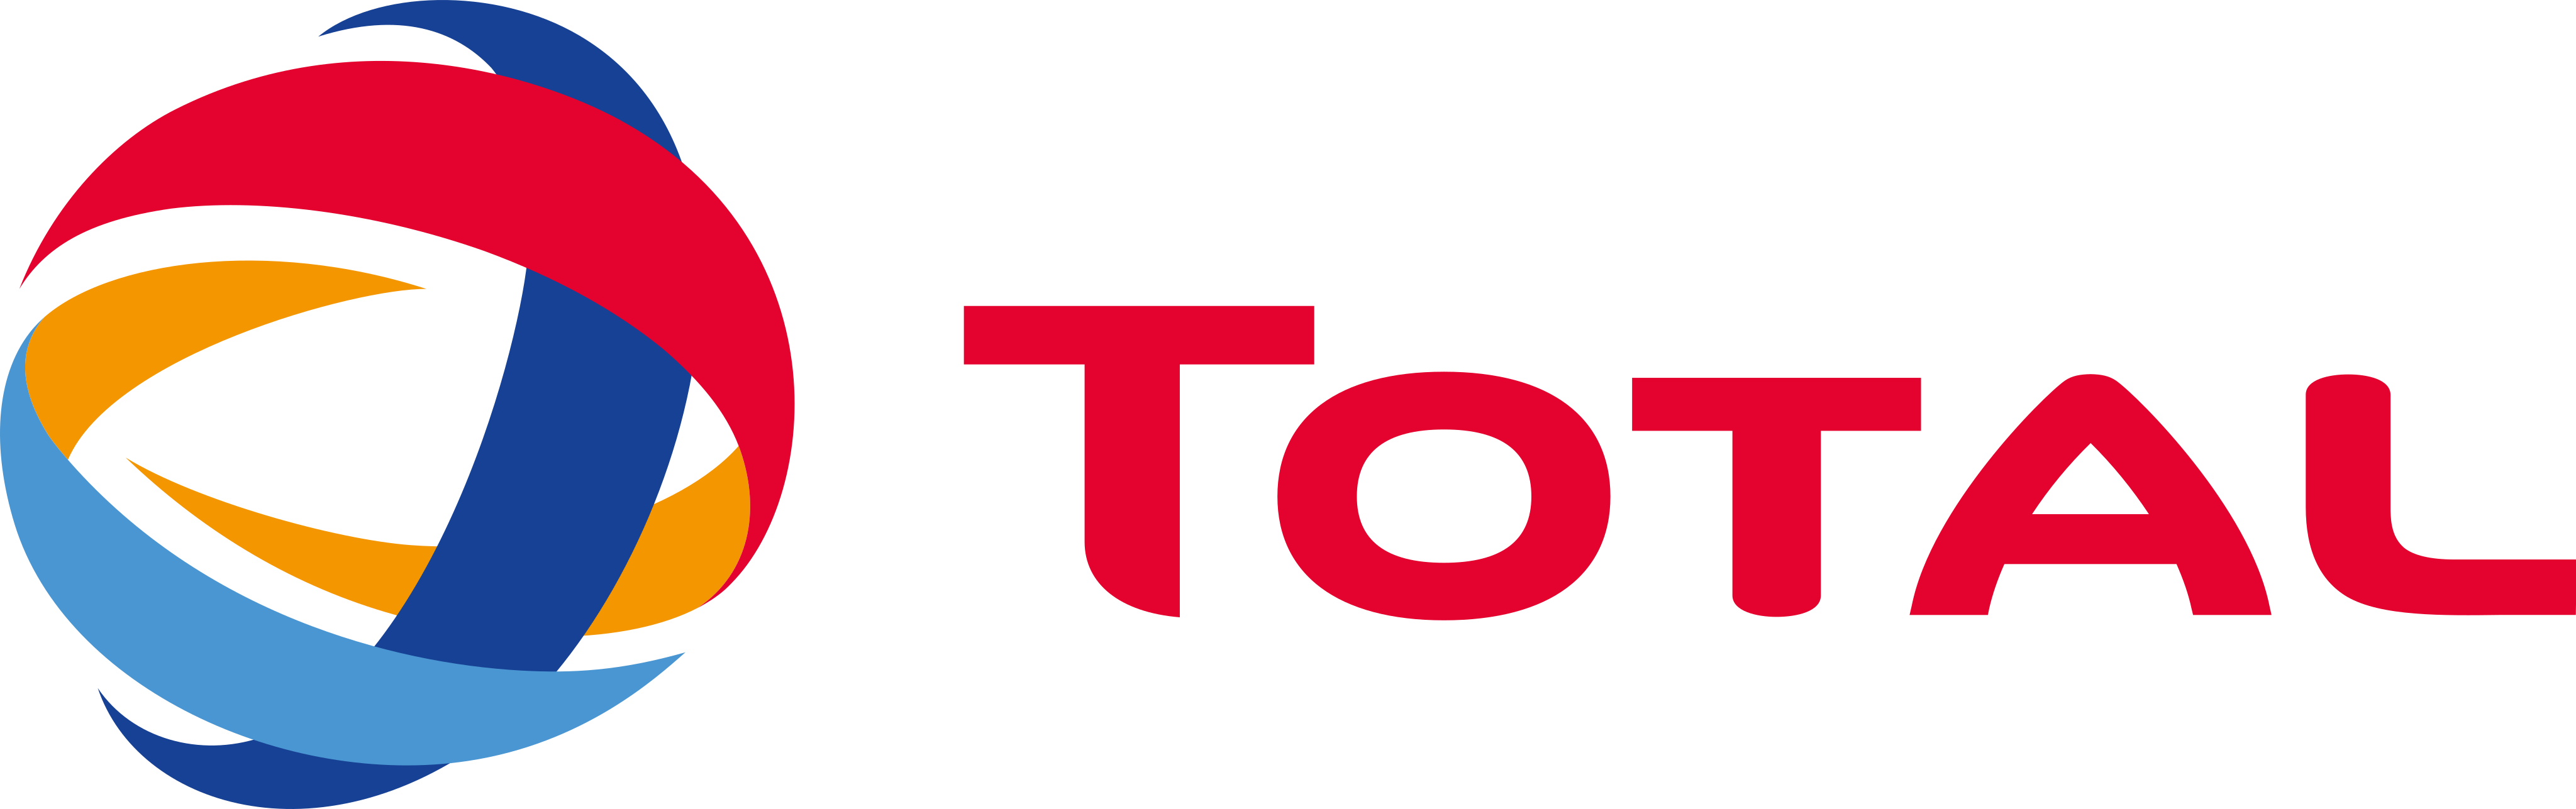 TotalEnergies SE logo